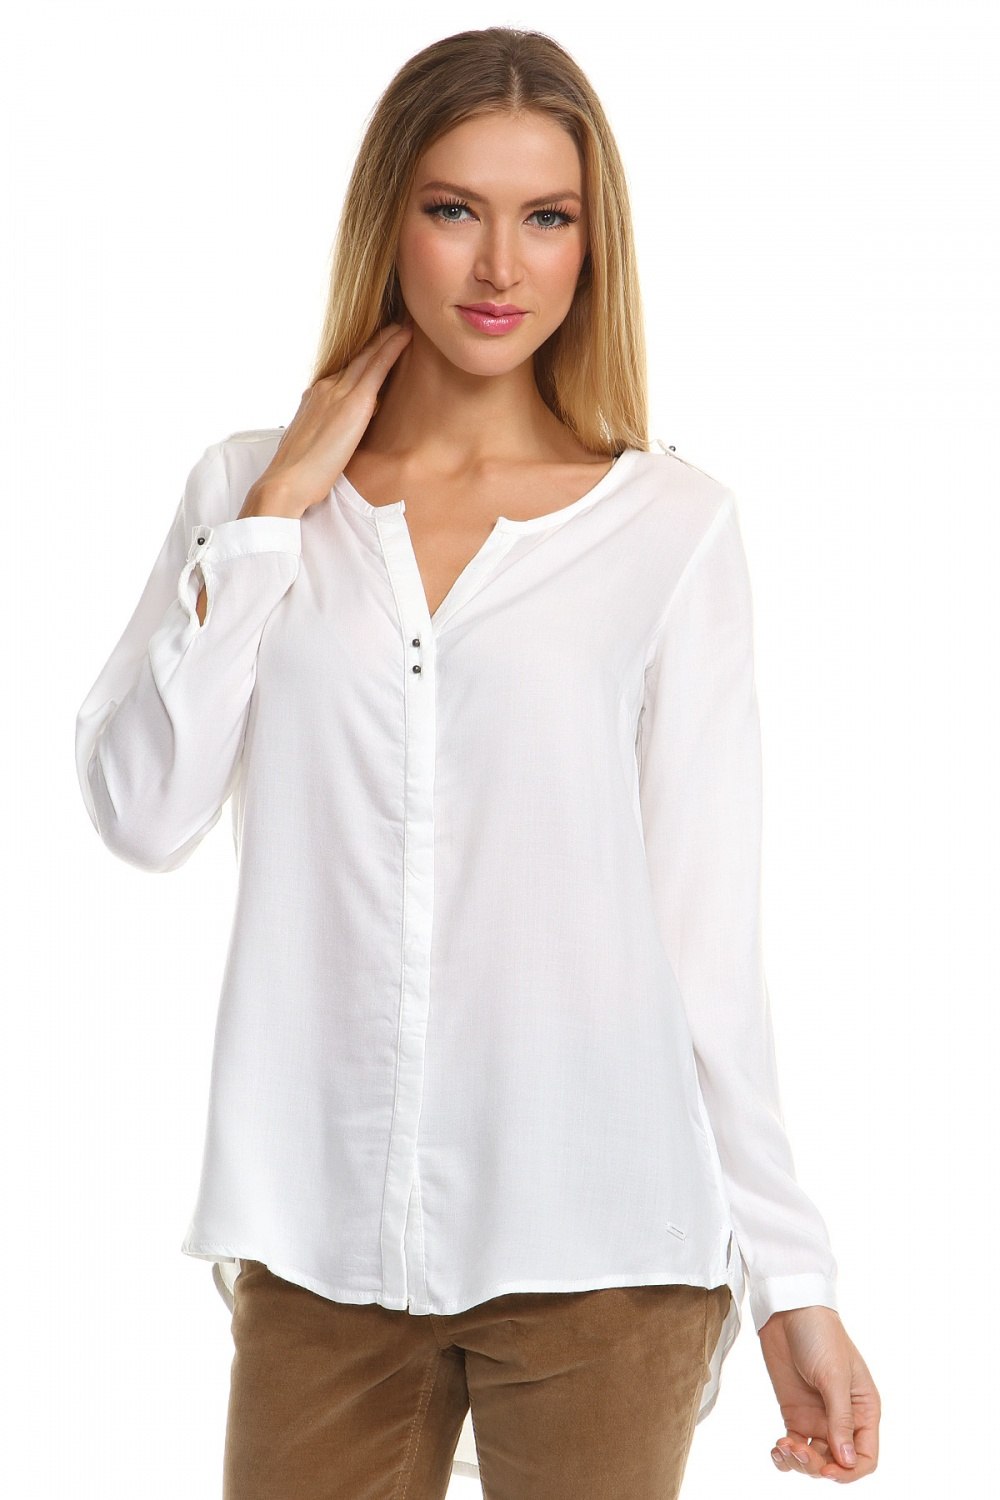 Интернет магазин белых блузок. Блузка женская. Белая блузка. Рубашка женская. Белая блузка женская.